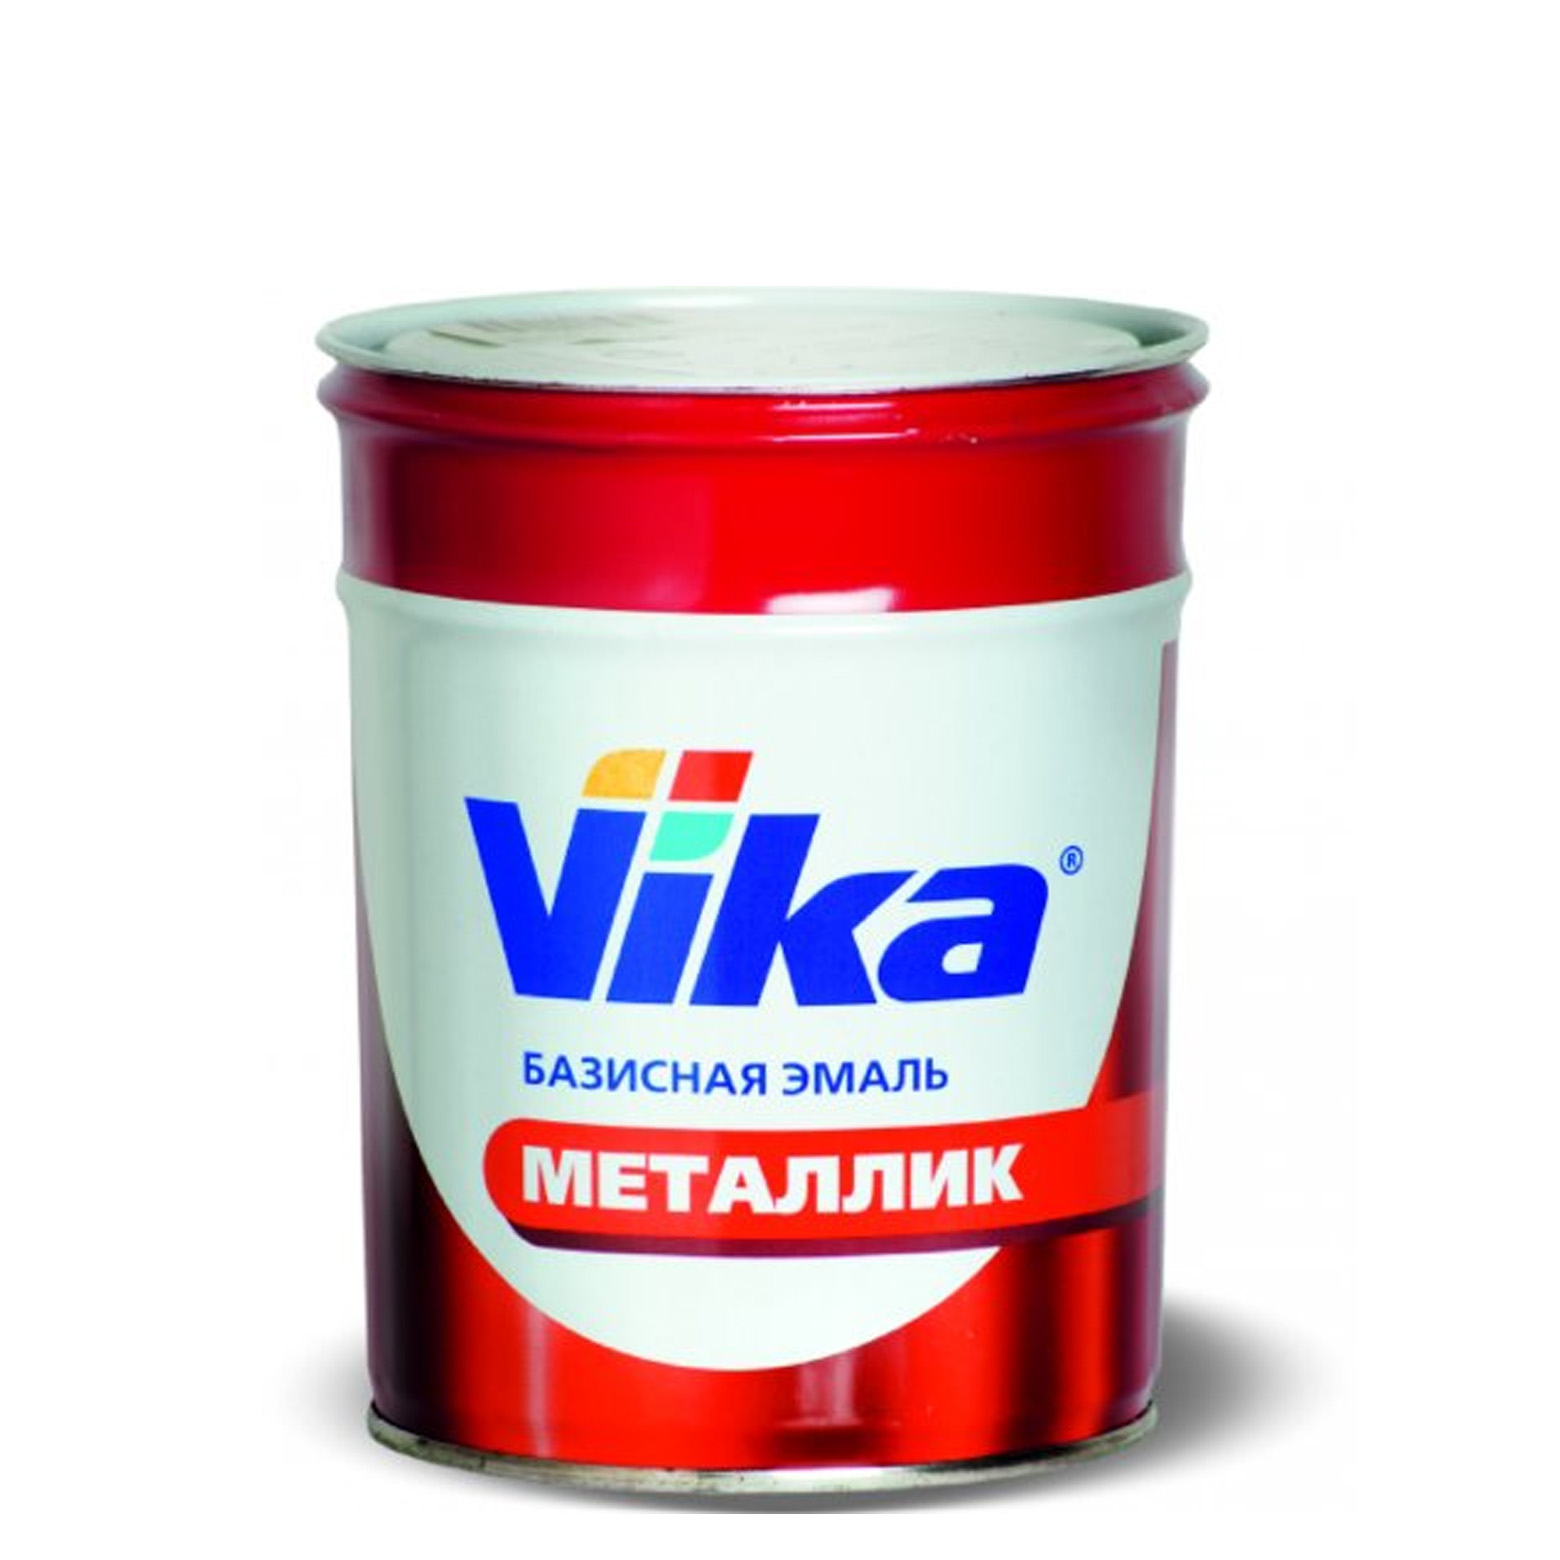 Фото 1 - Автоэмаль Металлик, цвет 413 Ледяной, профессиональная базовая, - 0,9 кг Vika/Вика.